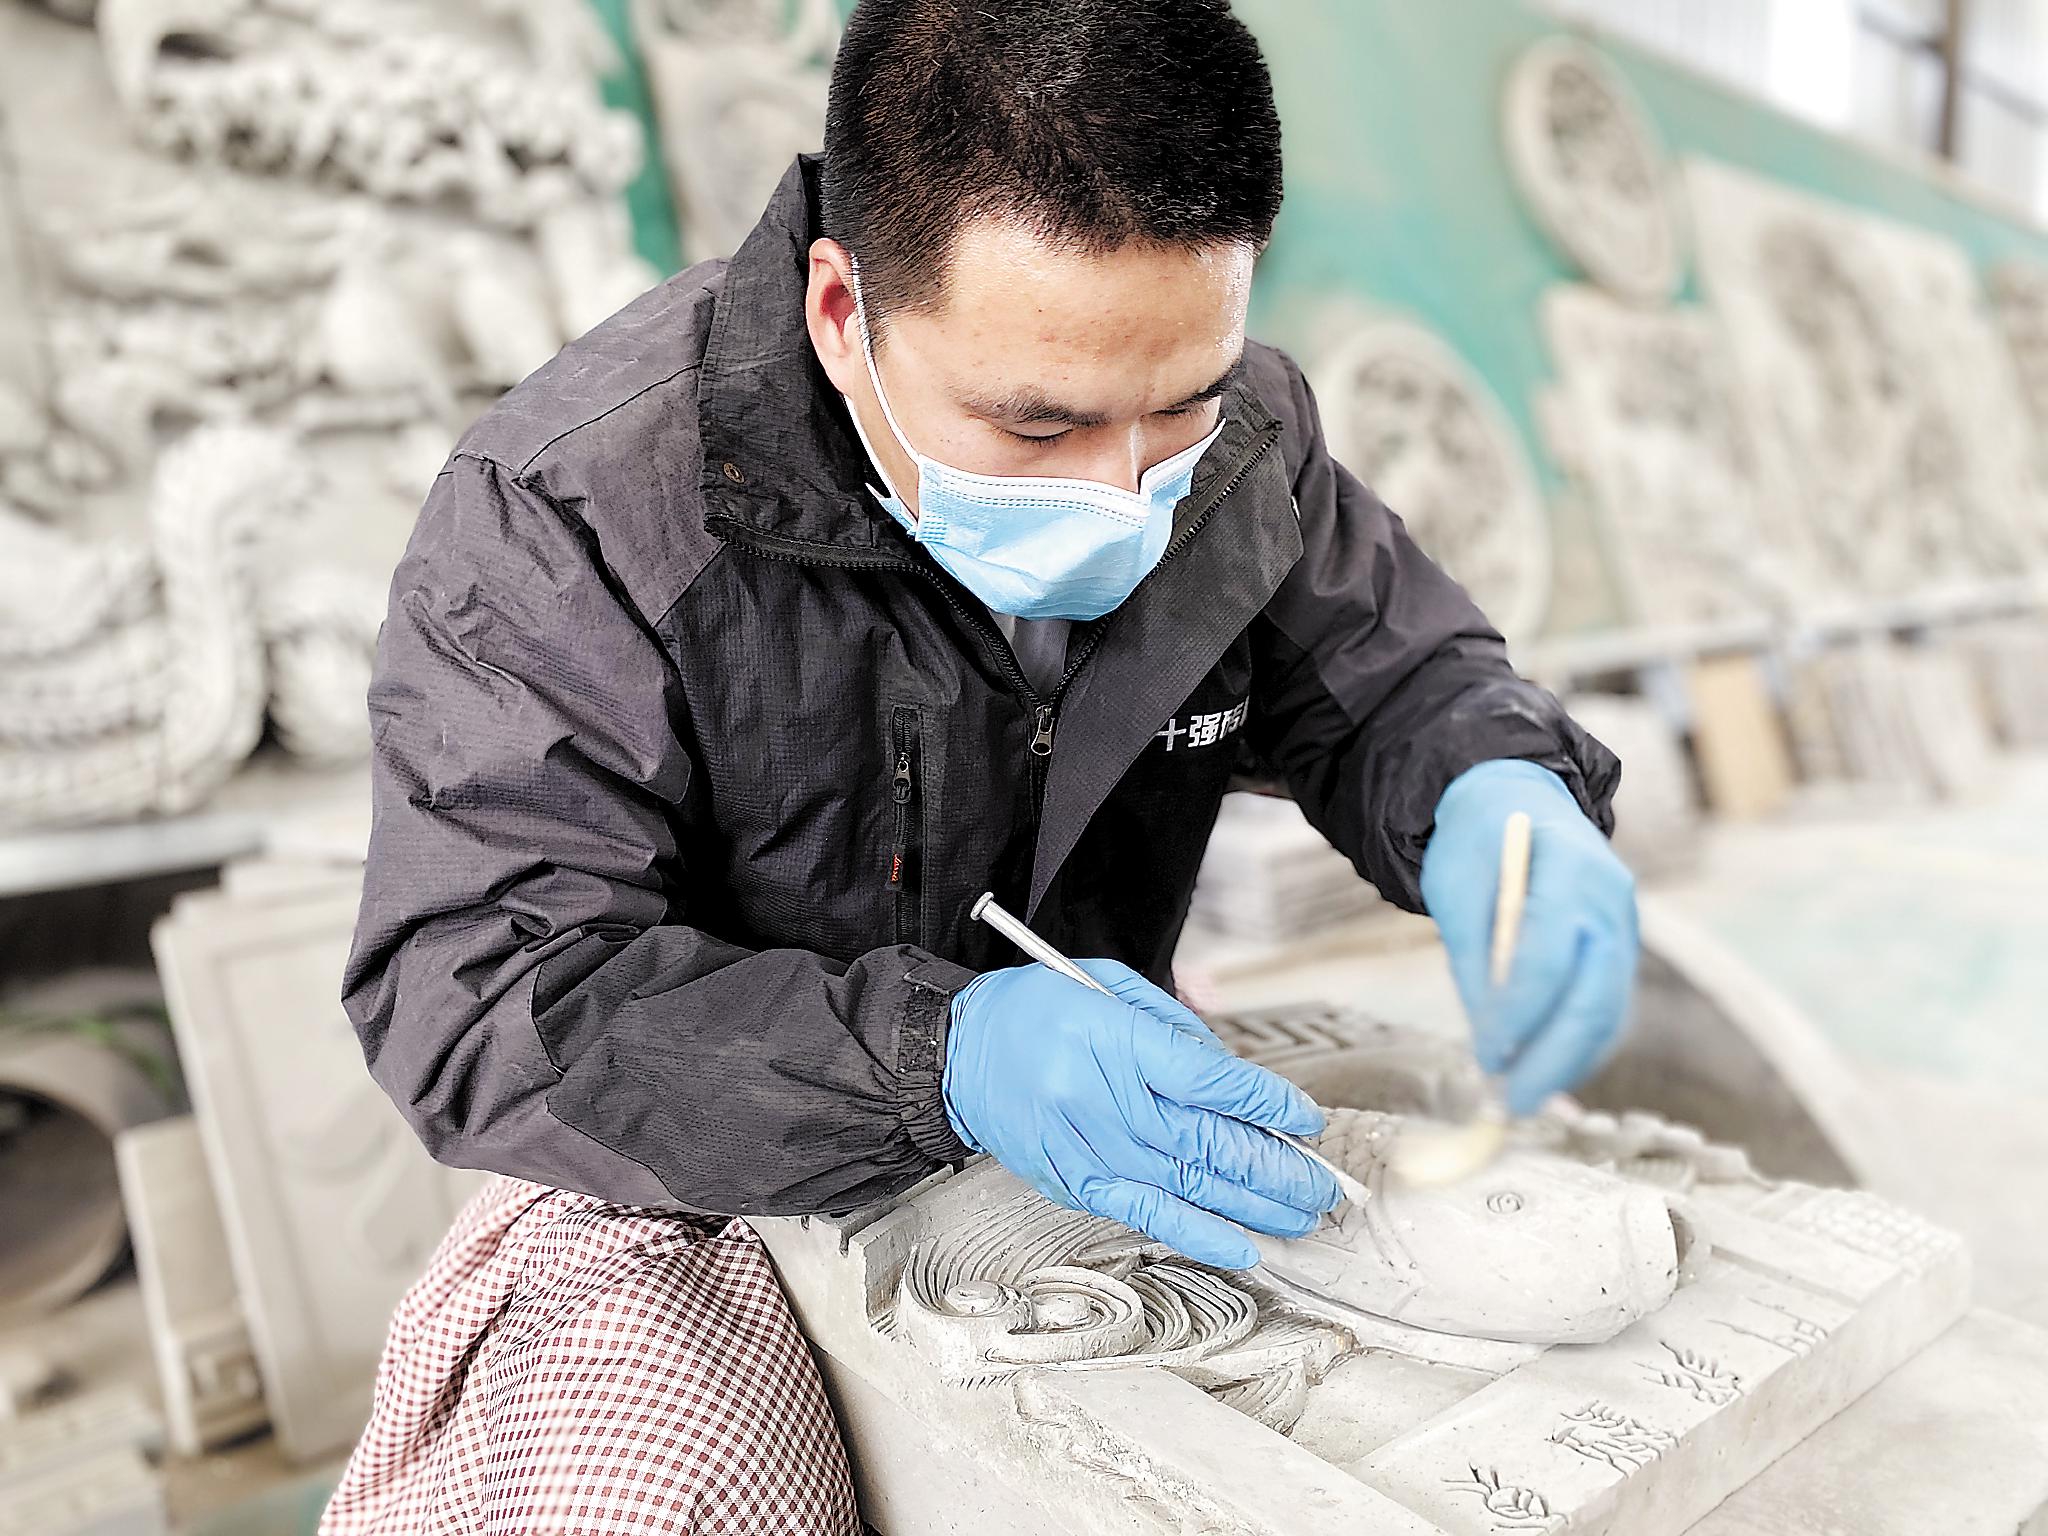 邯郸市永年区范氏瓦业有限公司，砖雕技师正在进行图案雕刻。 河北日报记者 史晟全摄